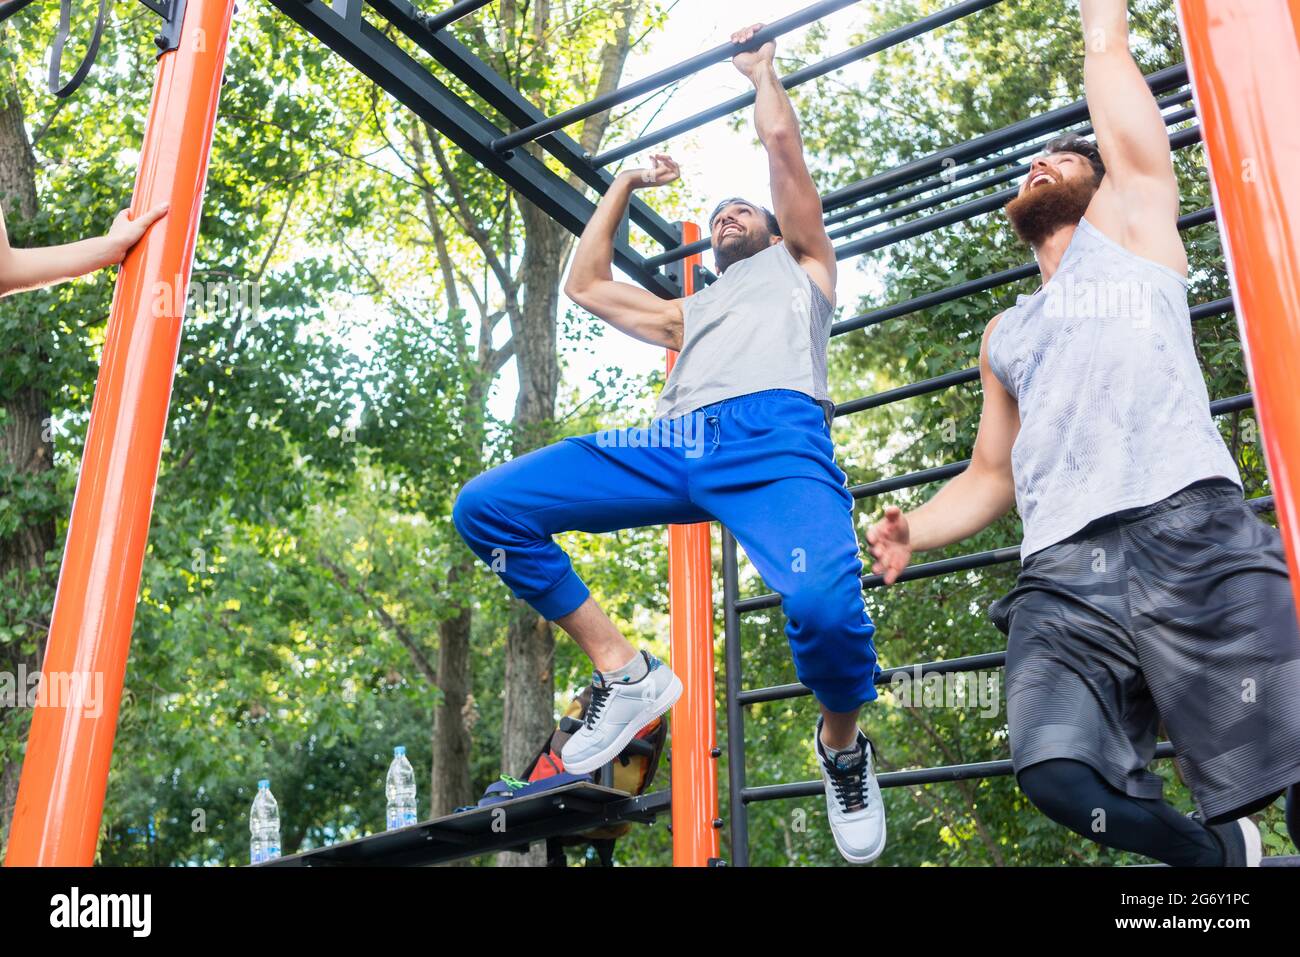 Faible angle de vue des deux hommes forte et compétitive sur l'exercice de barres pour le haut-corps dans un parc de la gymnastique moderne Banque D'Images